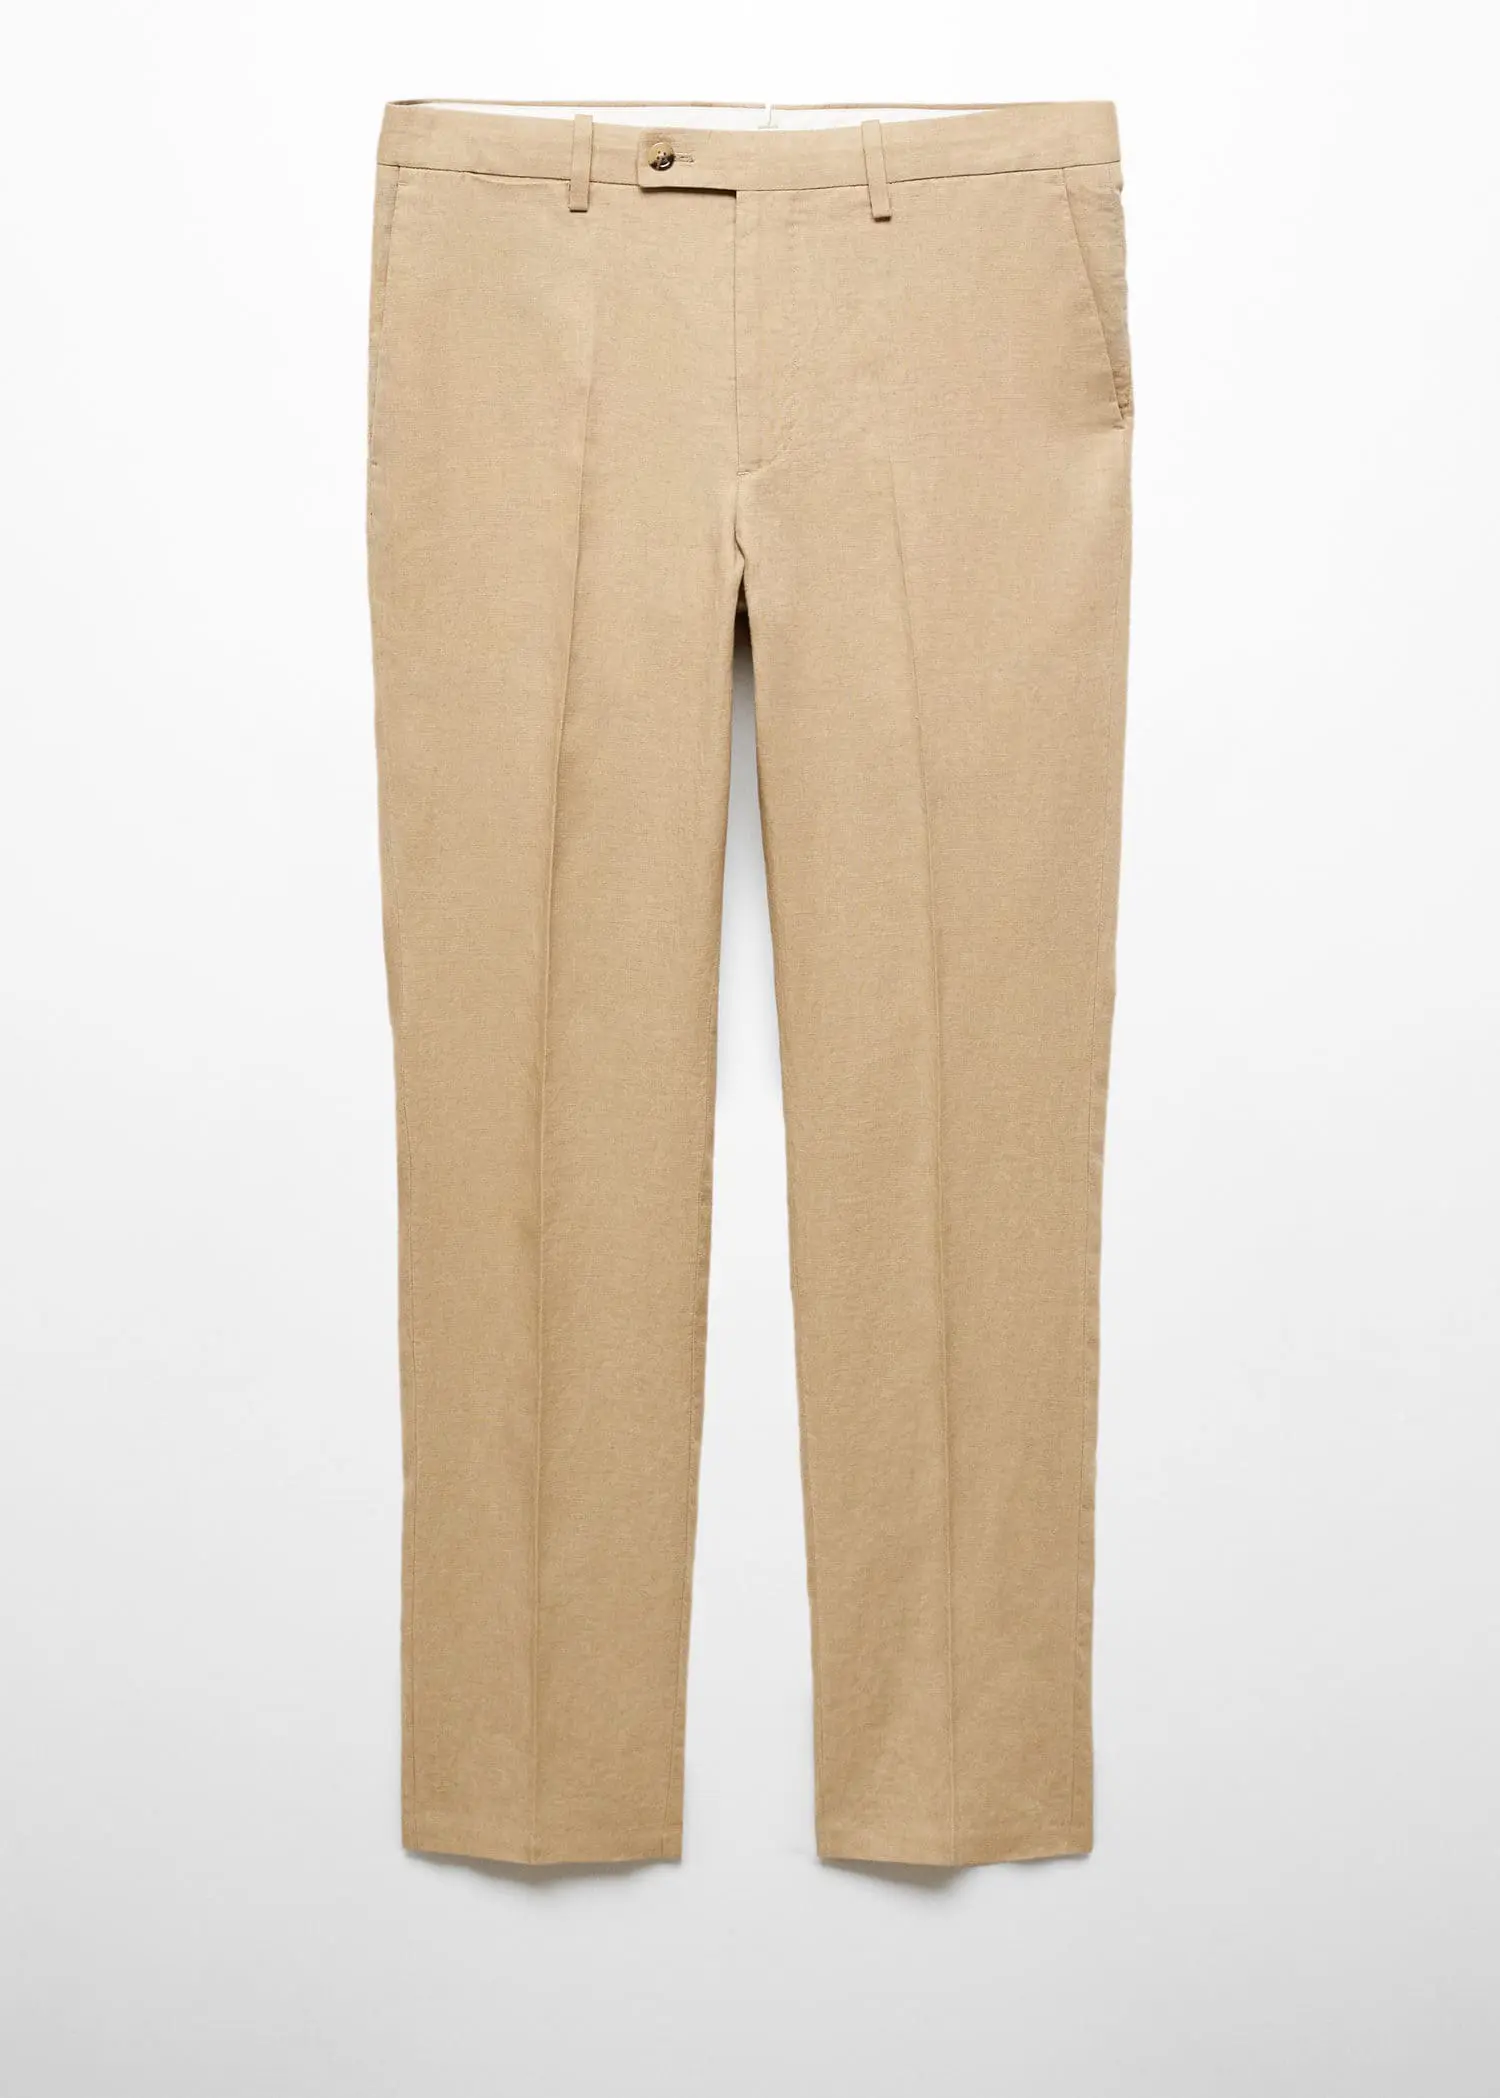 Mango Slim fit suit pants 100% linen. 1